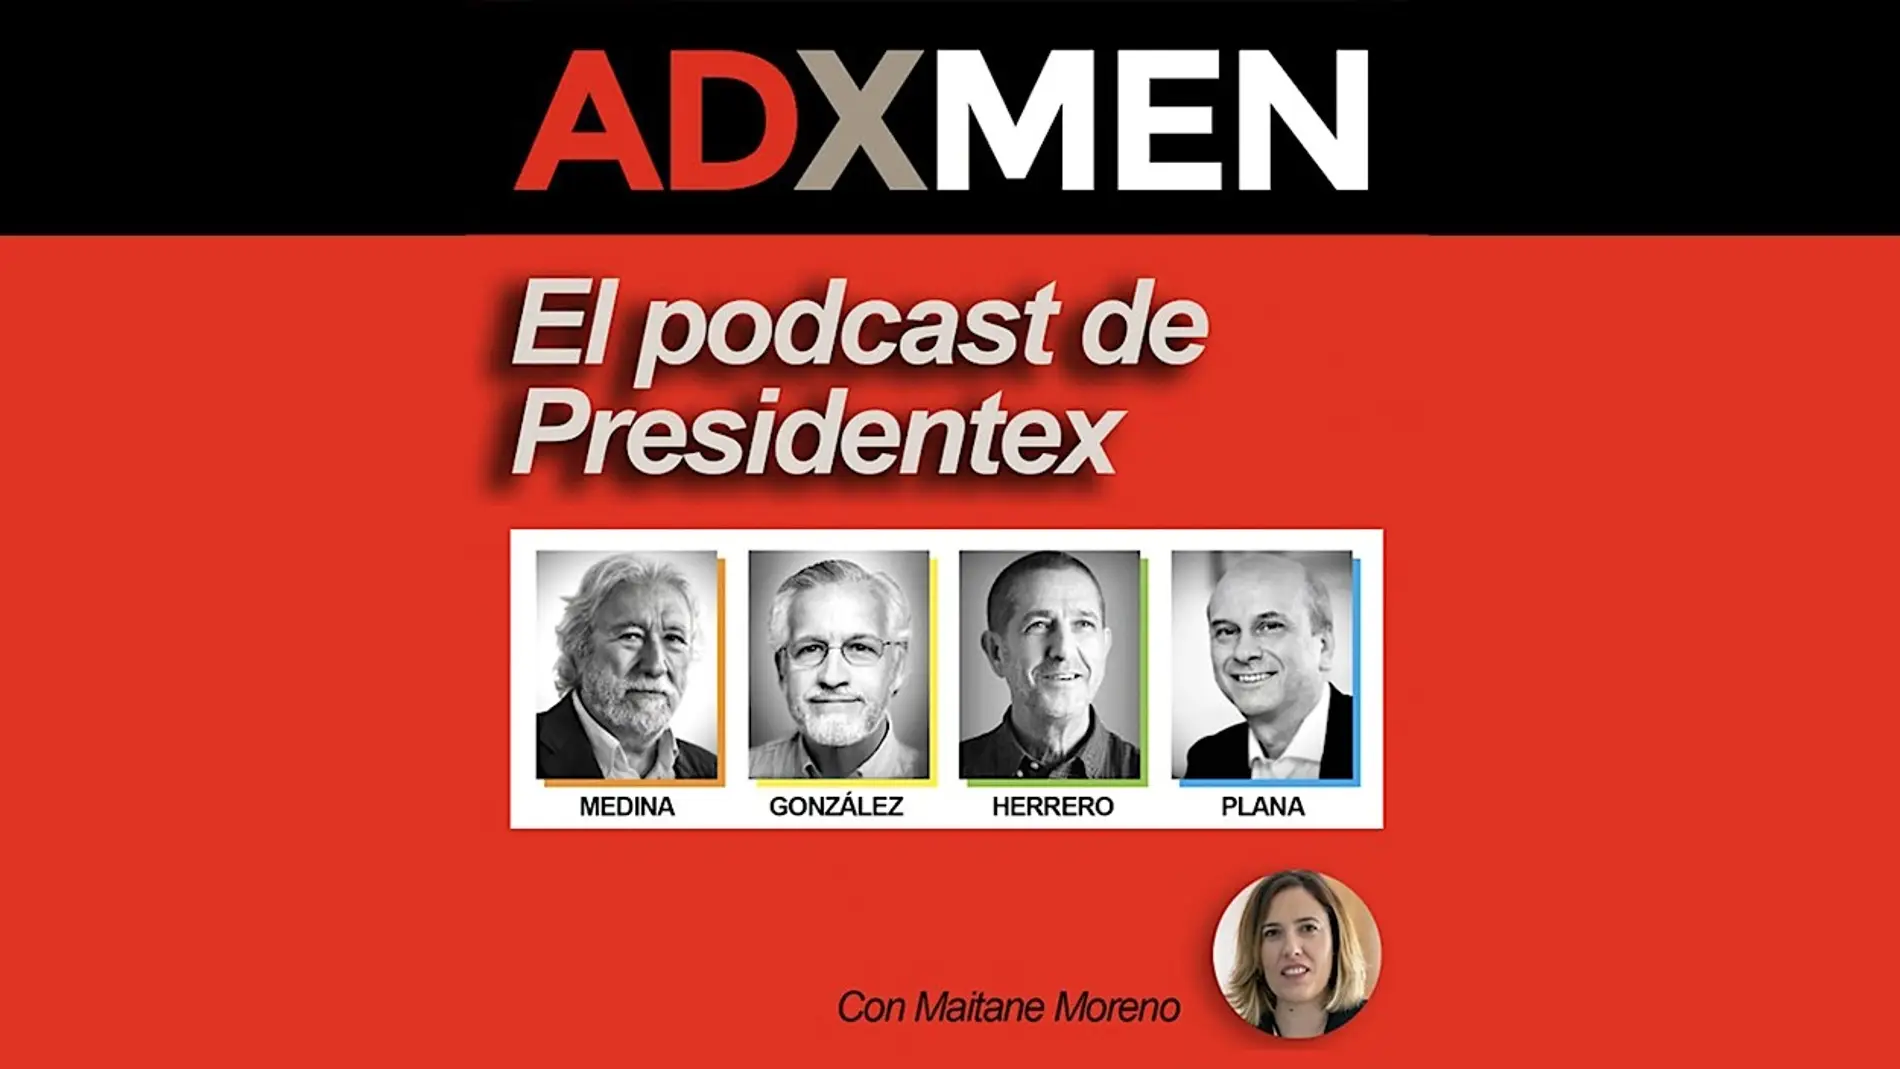 Onda Cero estrena ADxMEN, un podcast protagonizado por cuatro grandes gurús de la publicidad y el marketing en España